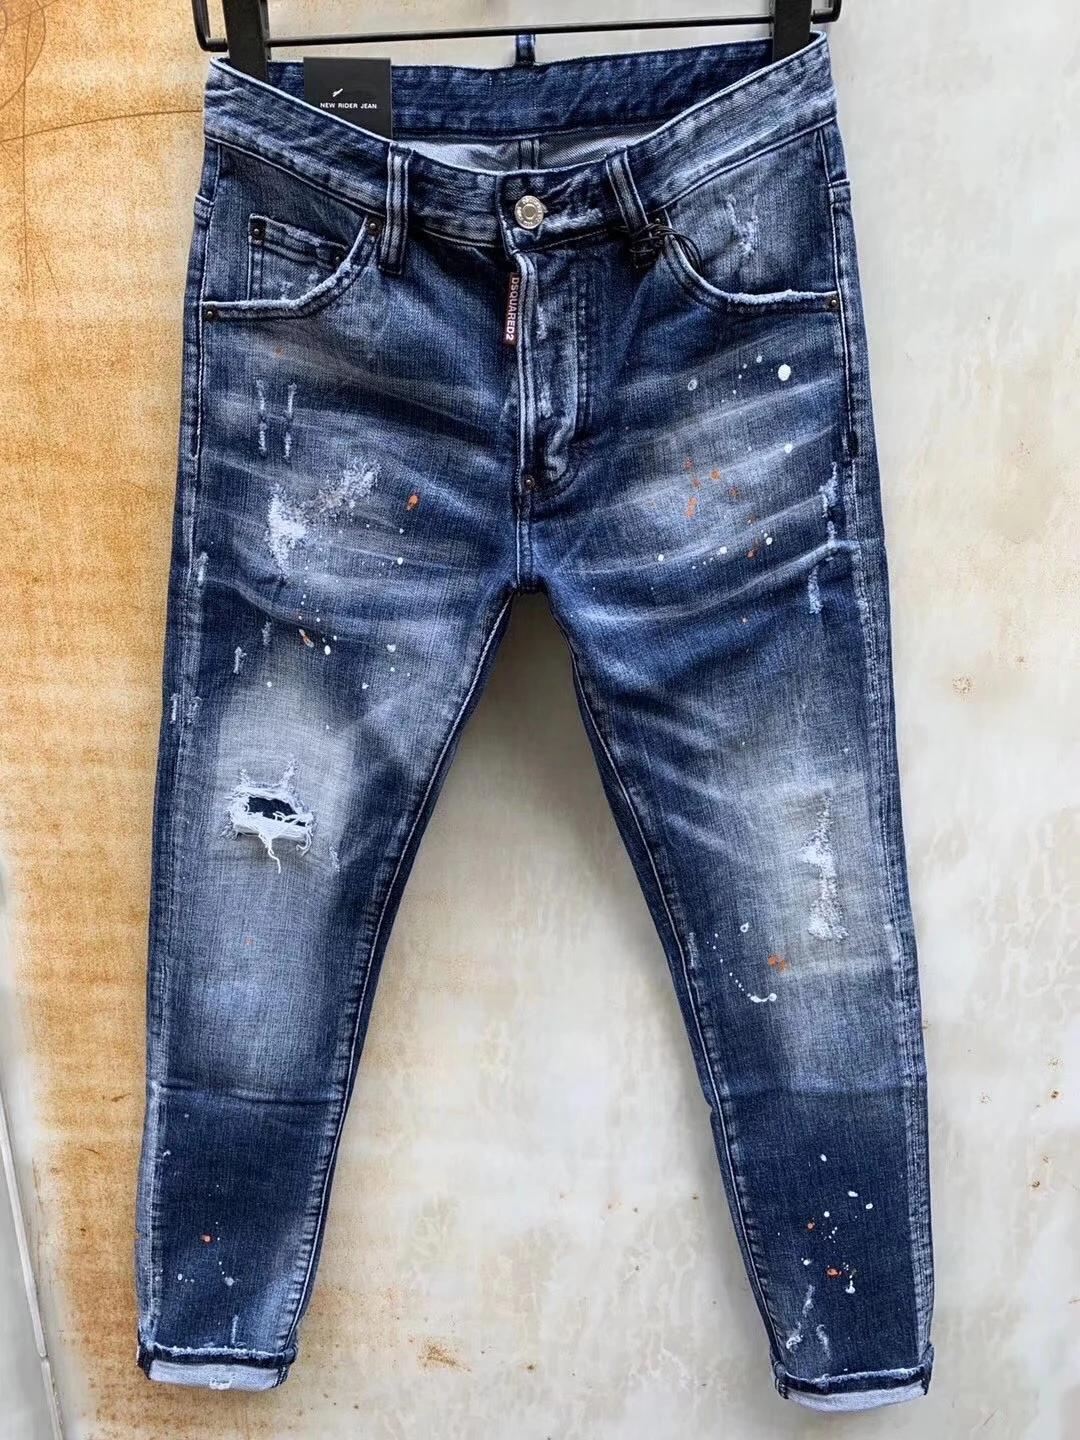 Pantalones vaqueros rasgados a la moda para hombre y mujer, Jeans rasgados de corte Slim, microelásticos con tinta rasgada, color azul, 979